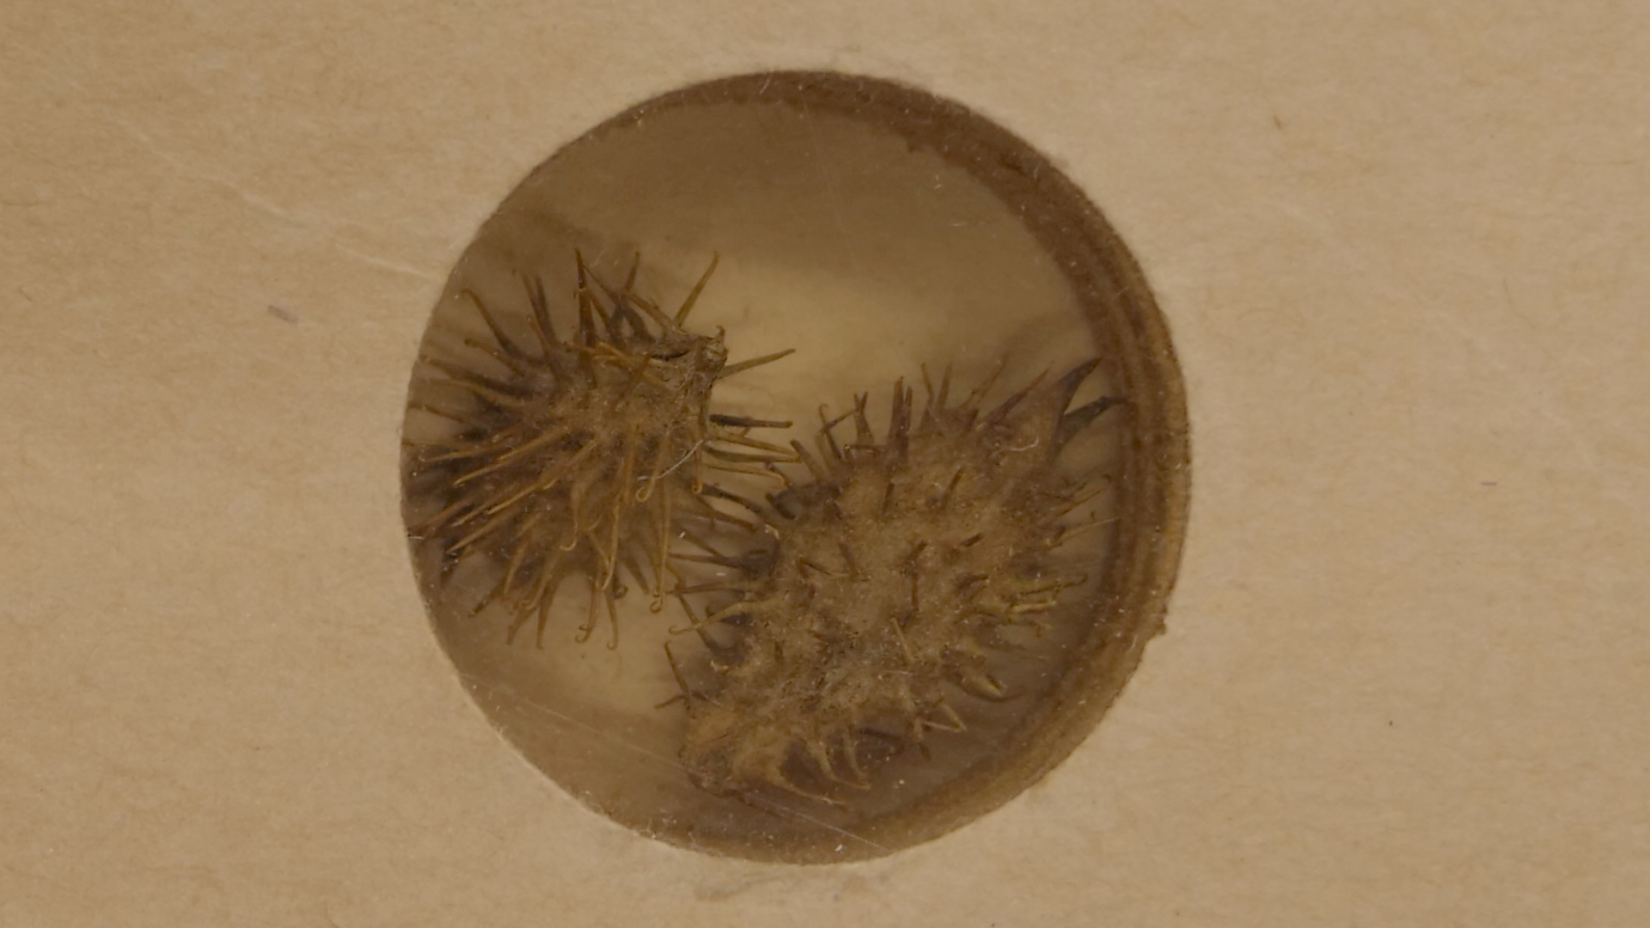 Dziedzerainā smaildadža (Xanthium strumarium) sēklu paraugs no Alfrēda Rasiņa sēklu kolekcijas